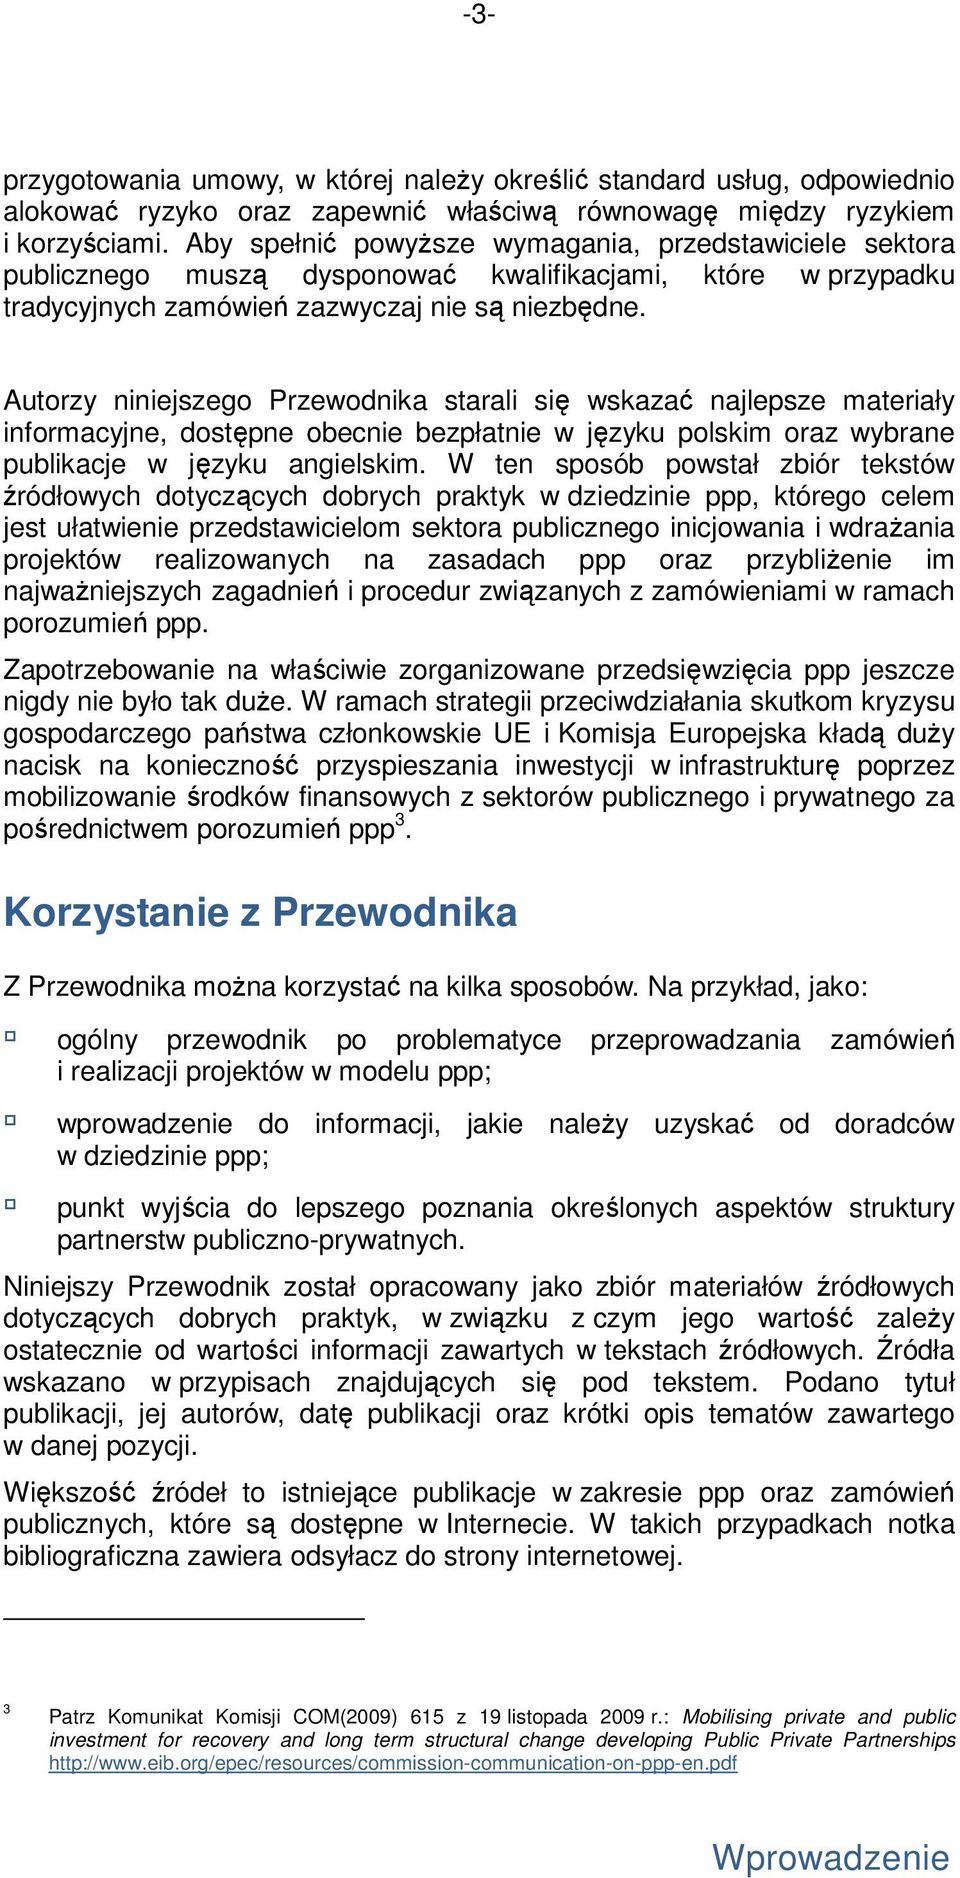 Autorzy niniejszego Przewodnika starali się wskazać najlepsze materiały informacyjne, dostępne obecnie bezpłatnie w języku polskim oraz wybrane publikacje w języku angielskim.